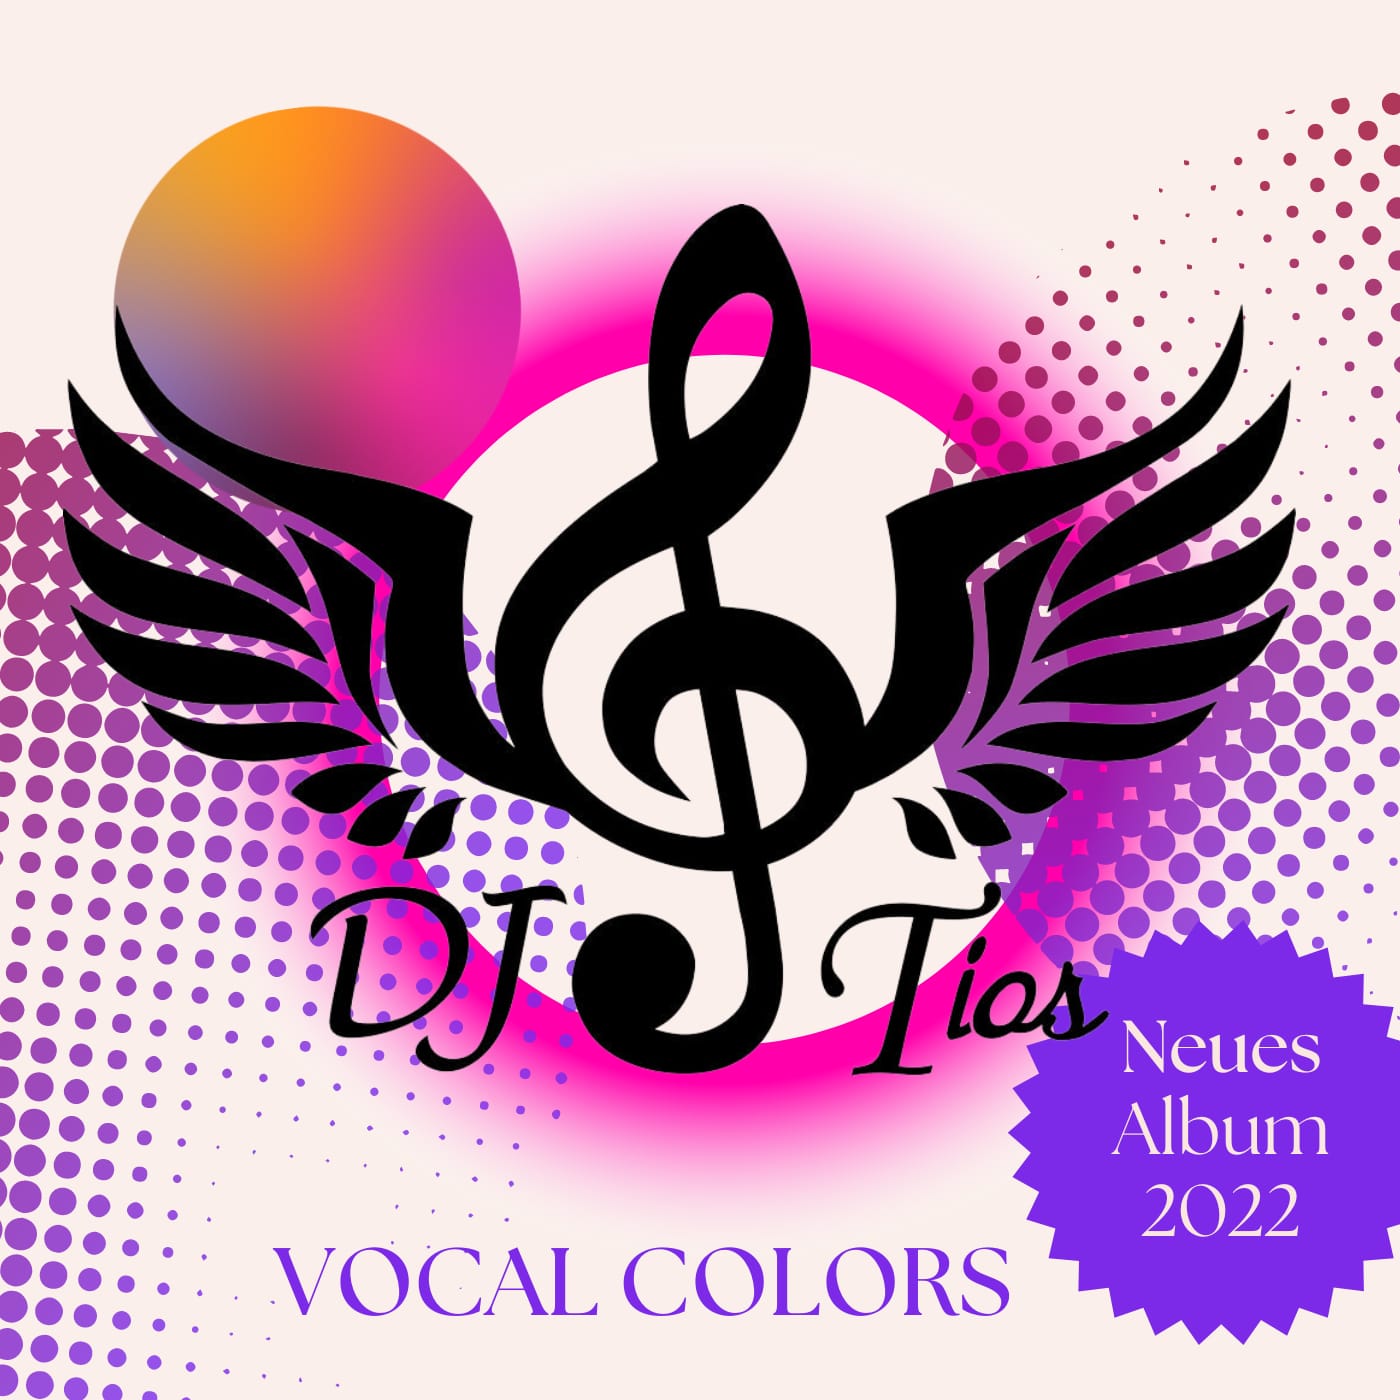 DJ Tios - Vocal Colors